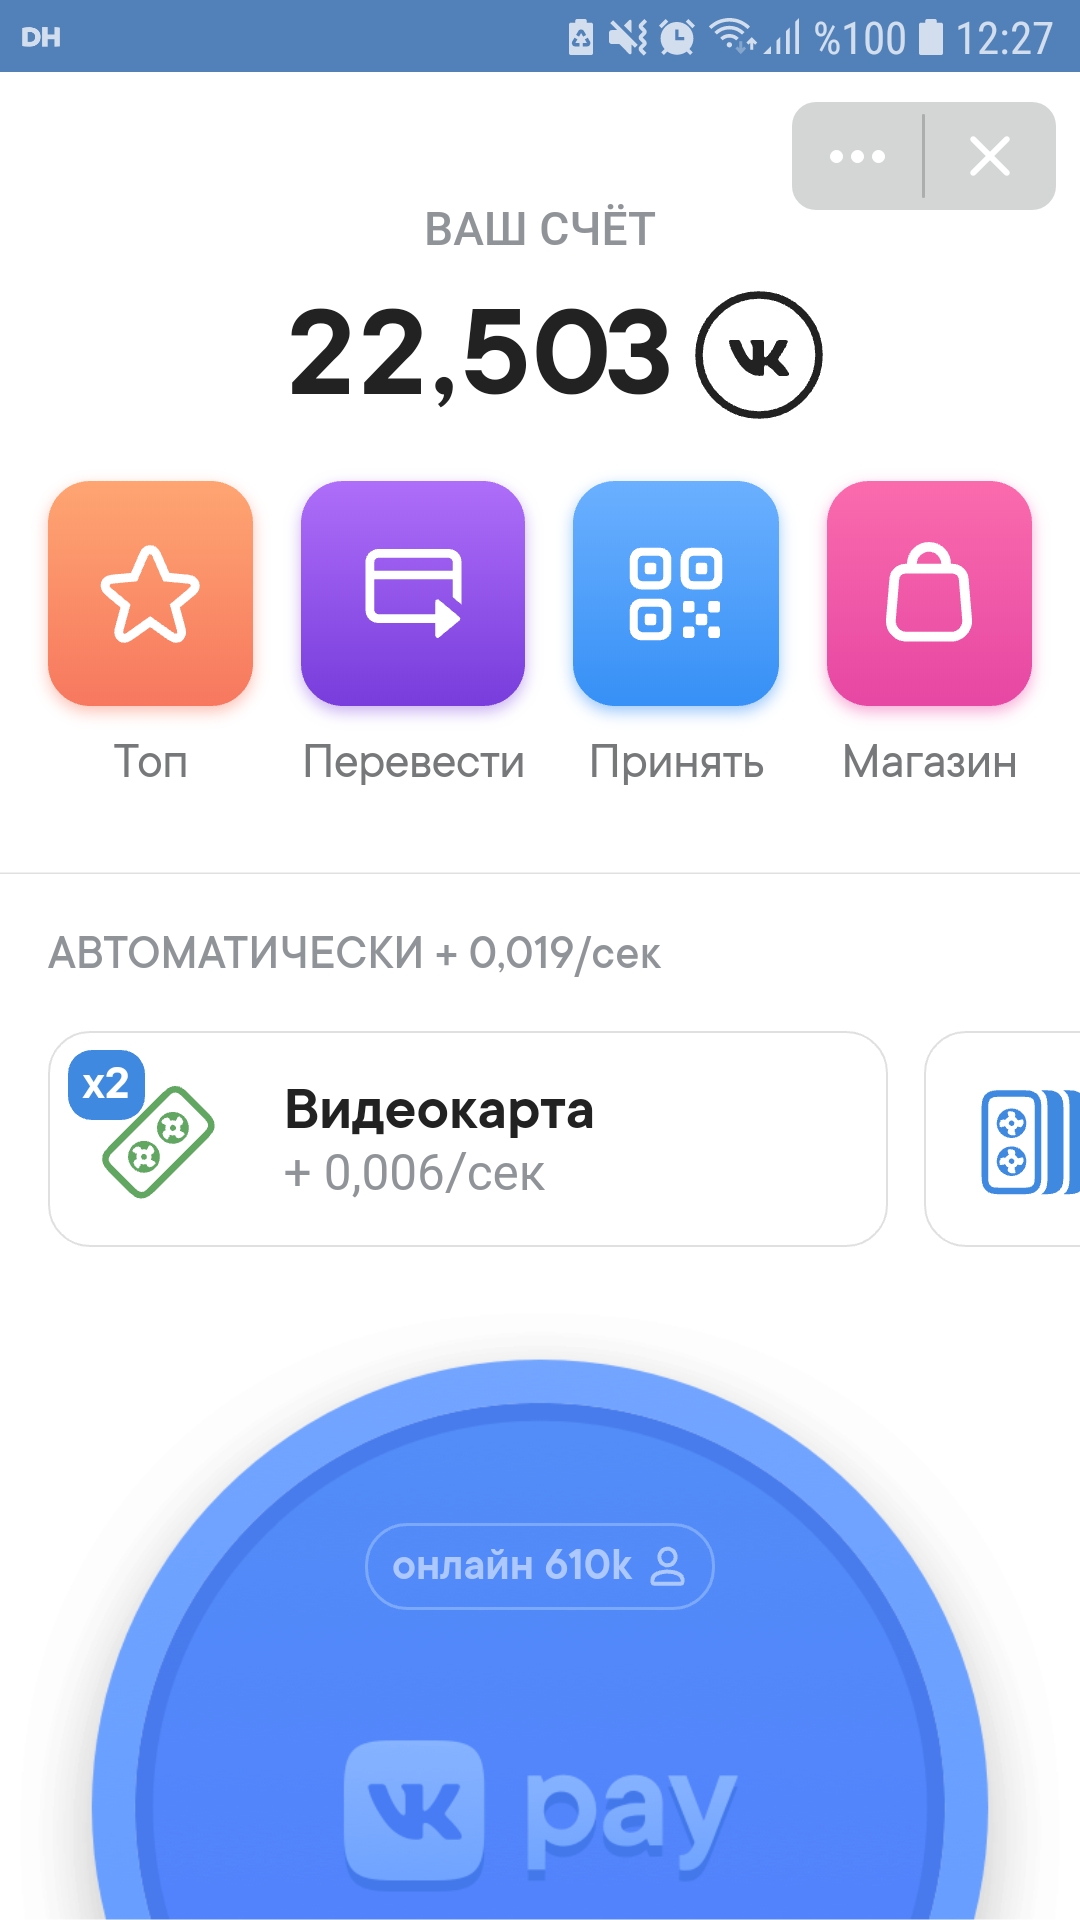 Rus sosyal medya devi VK kendi kripto parasını çıkardı